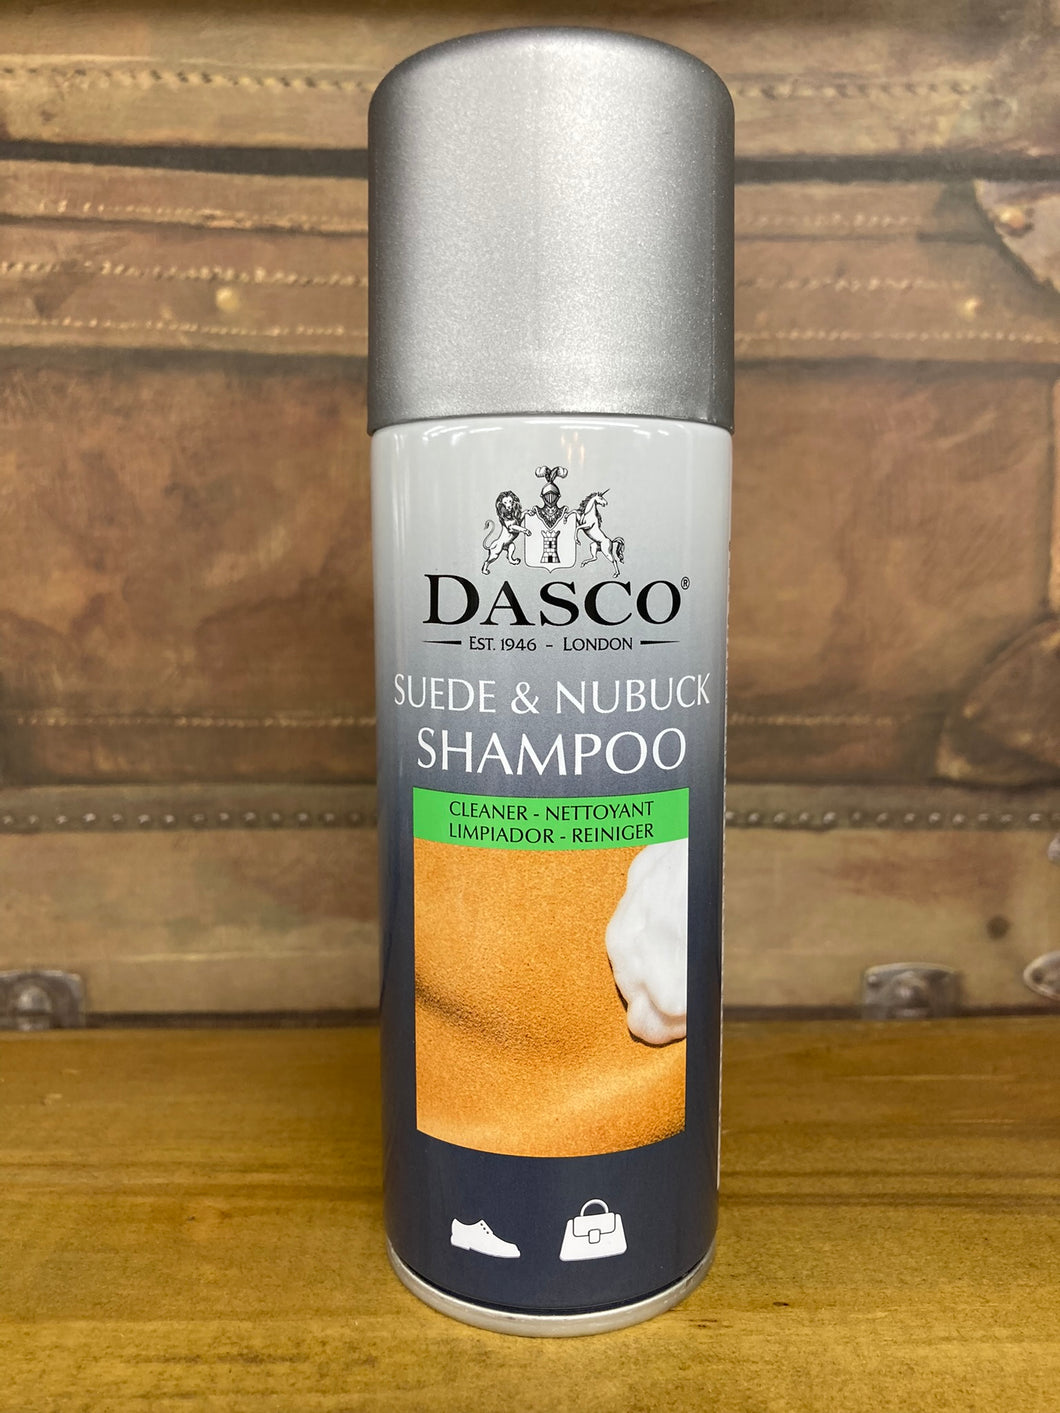 Dasco suede & nubuck shampoo